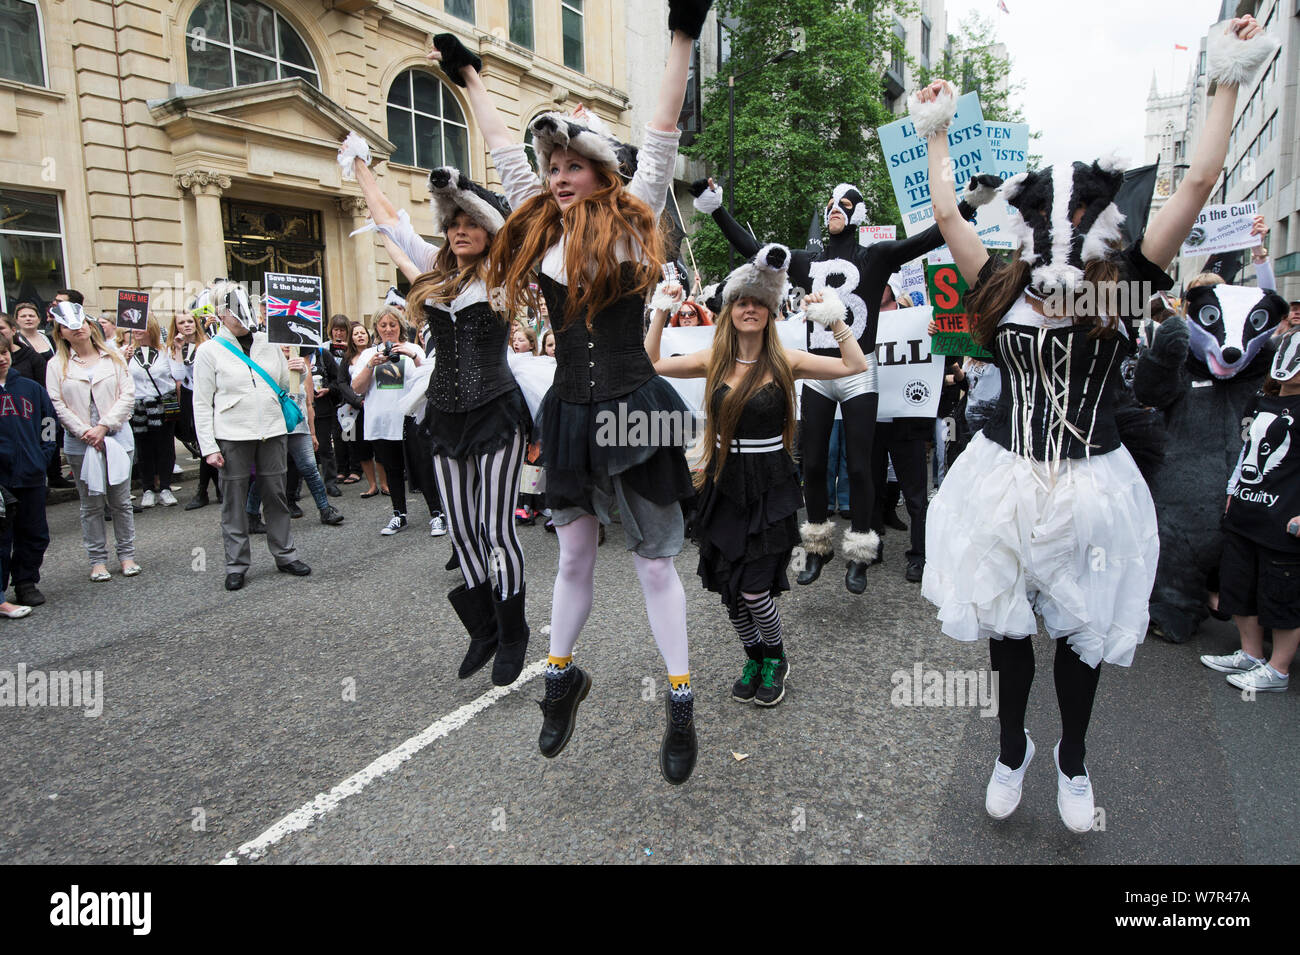 Danseurs de la Artful Badger Group, la danse en costumes, blaireau Blaireau anti cull, mars 1er juin 2013 à Londres. Banque D'Images